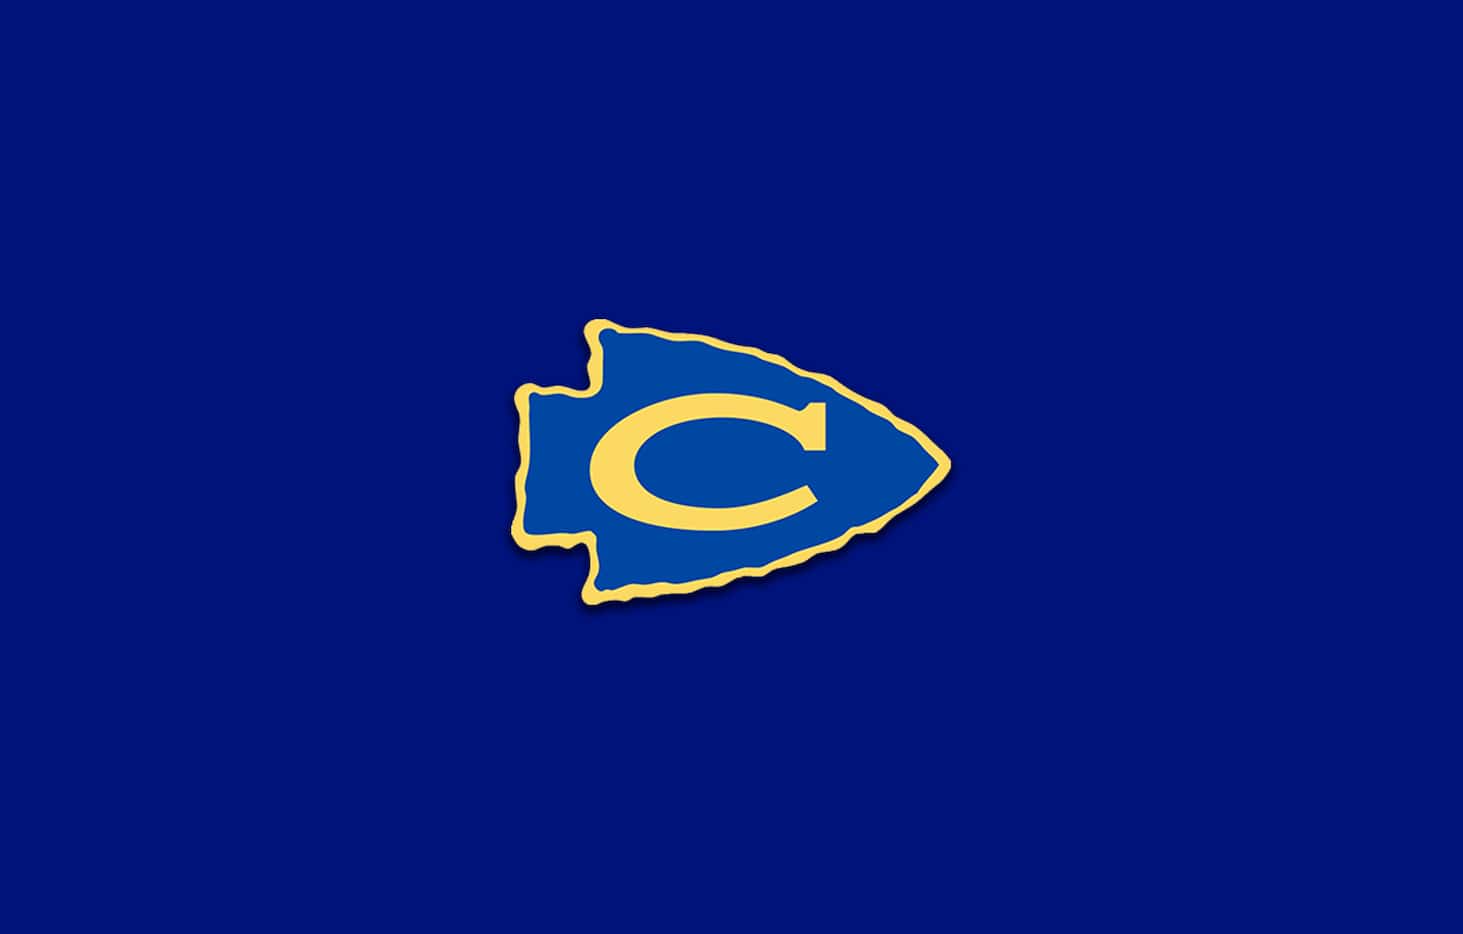 Nevada Community logo.